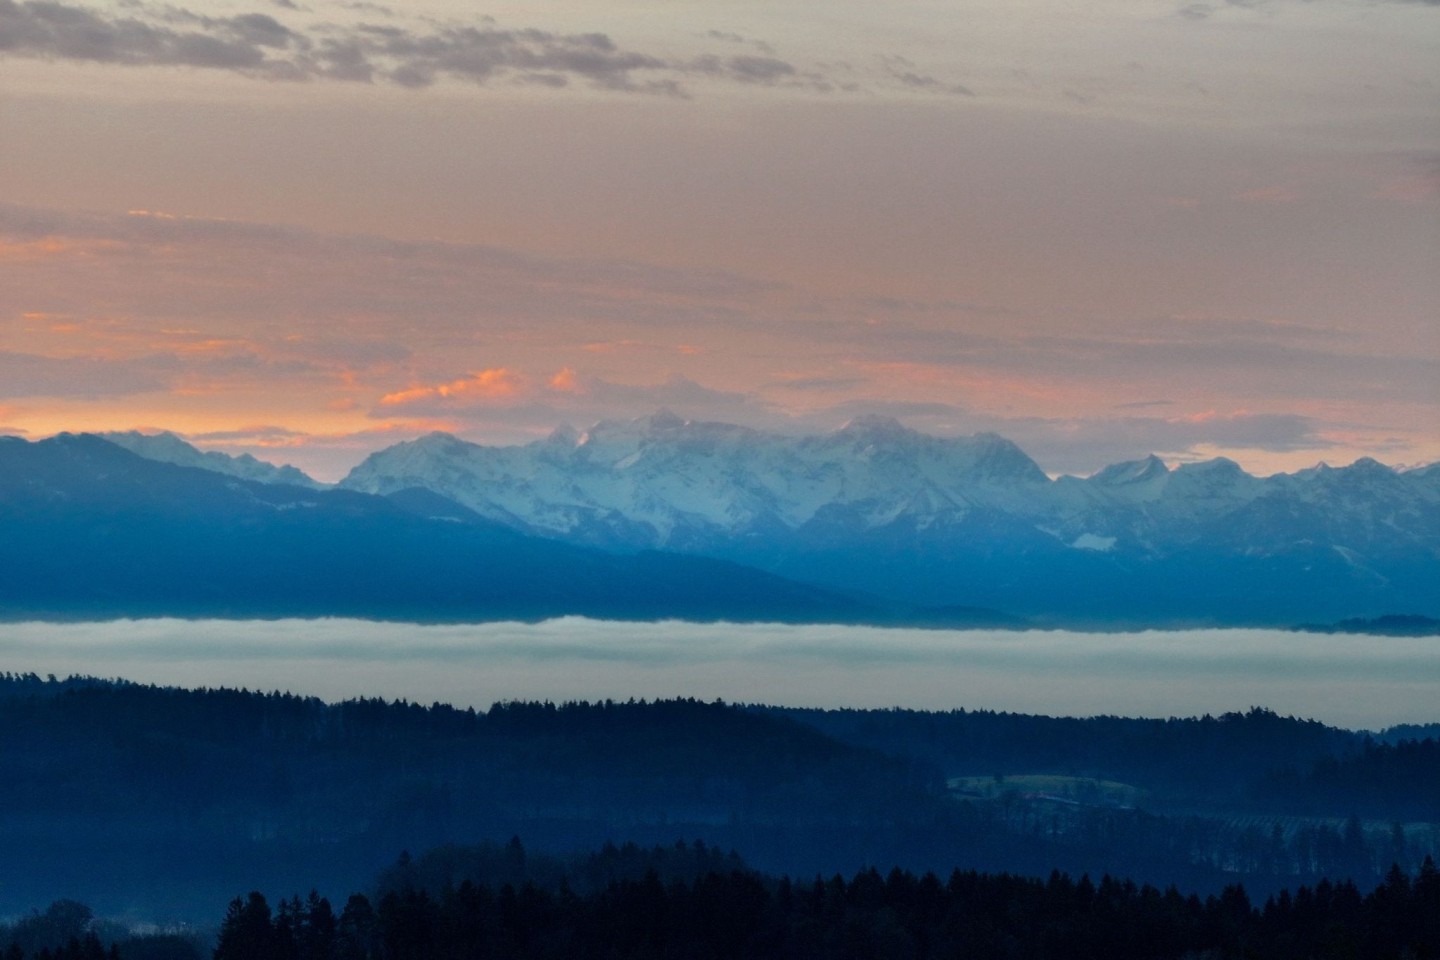 Nebel bedeckt bei Sonnenaufgang den Bodensee, während im Hintergrund die Alpen zu sehen sind.